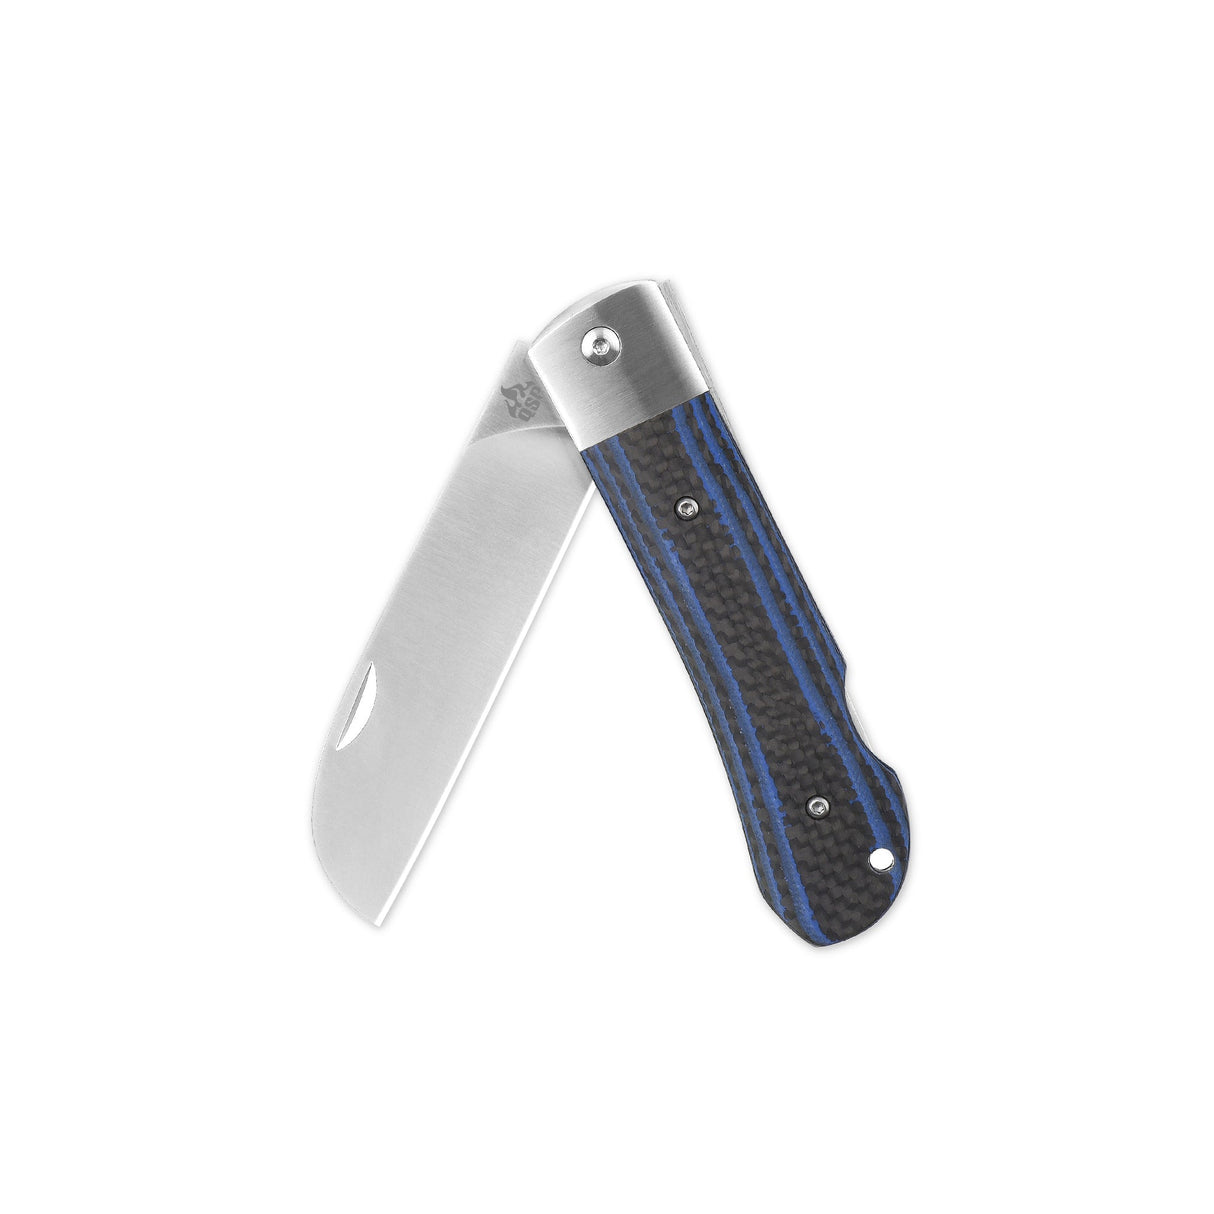 QSP Worker Lock Back Pocket Knife Böhler N690 Blade CF and Blue G10 Handle